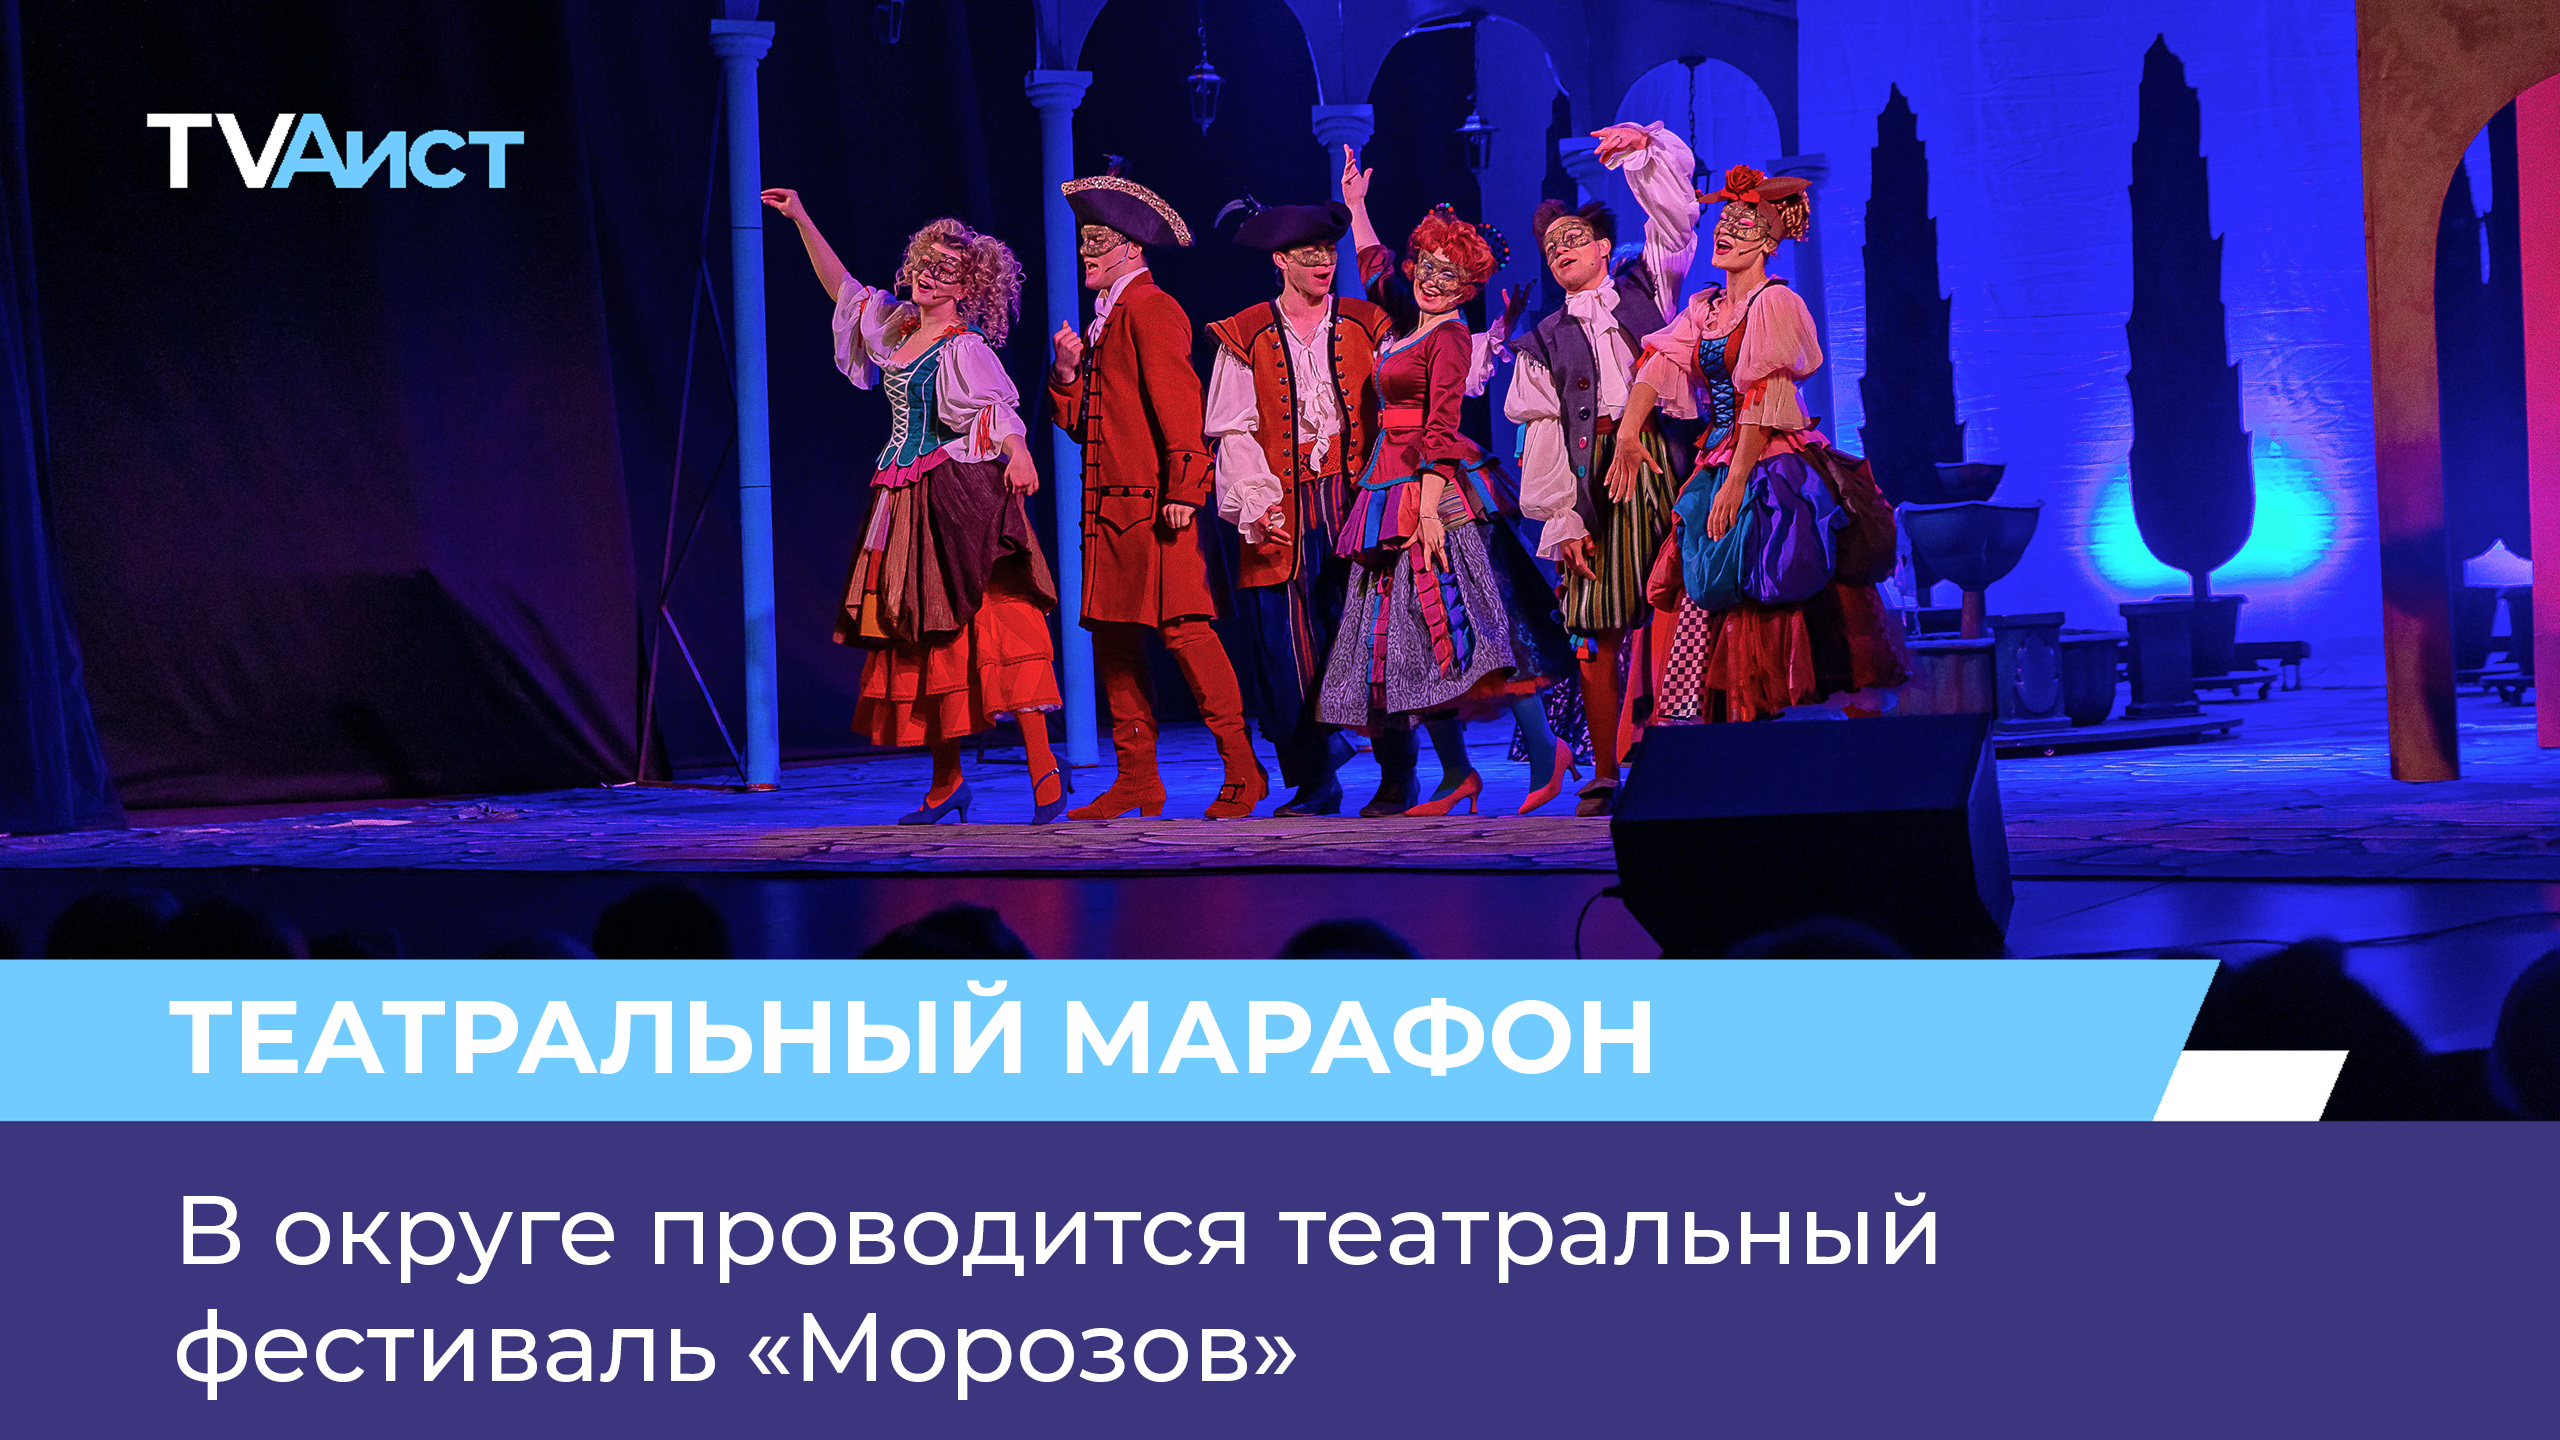 В округе проводится театральный фестиваль «Морозов»